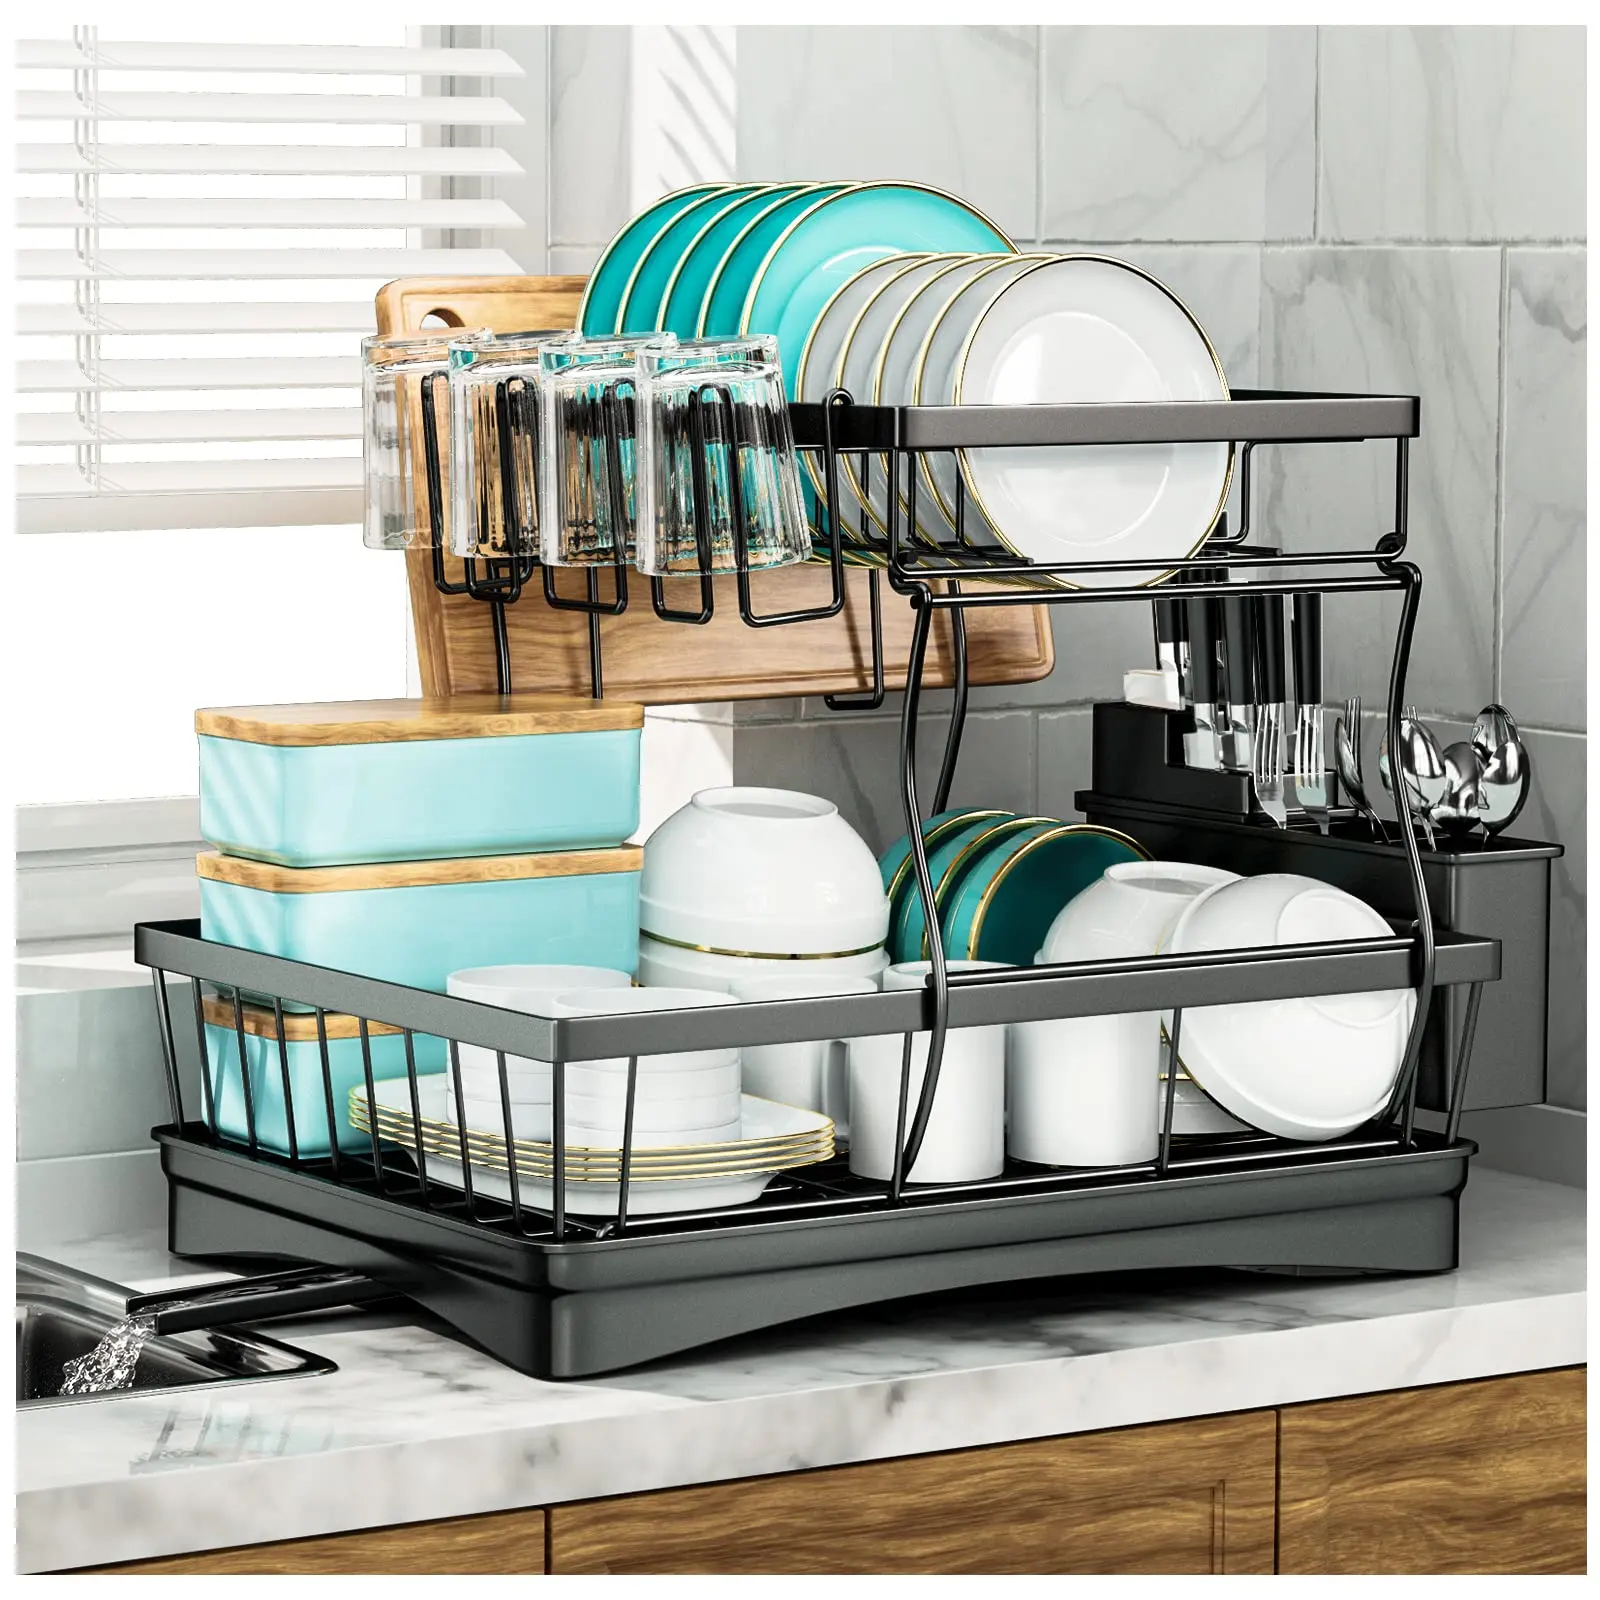 Escurridor de platos para el fregadero, escurridor de vajilla de 2 capas, para encimera de cocina, colador de platos de alta capacidad y sartén de agua